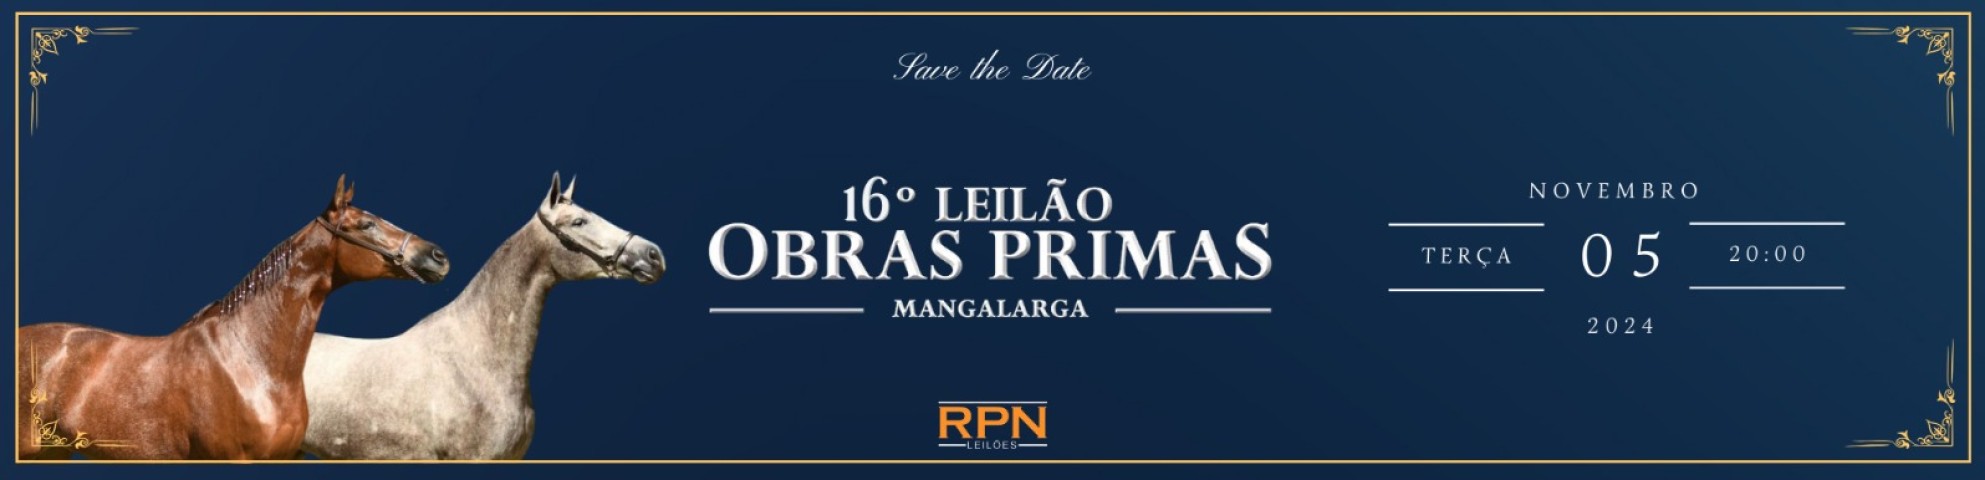 Slide 16º LEILÃO OBRAS PRIMAS MANGALARGA (LEILÃO VIRTUAL)